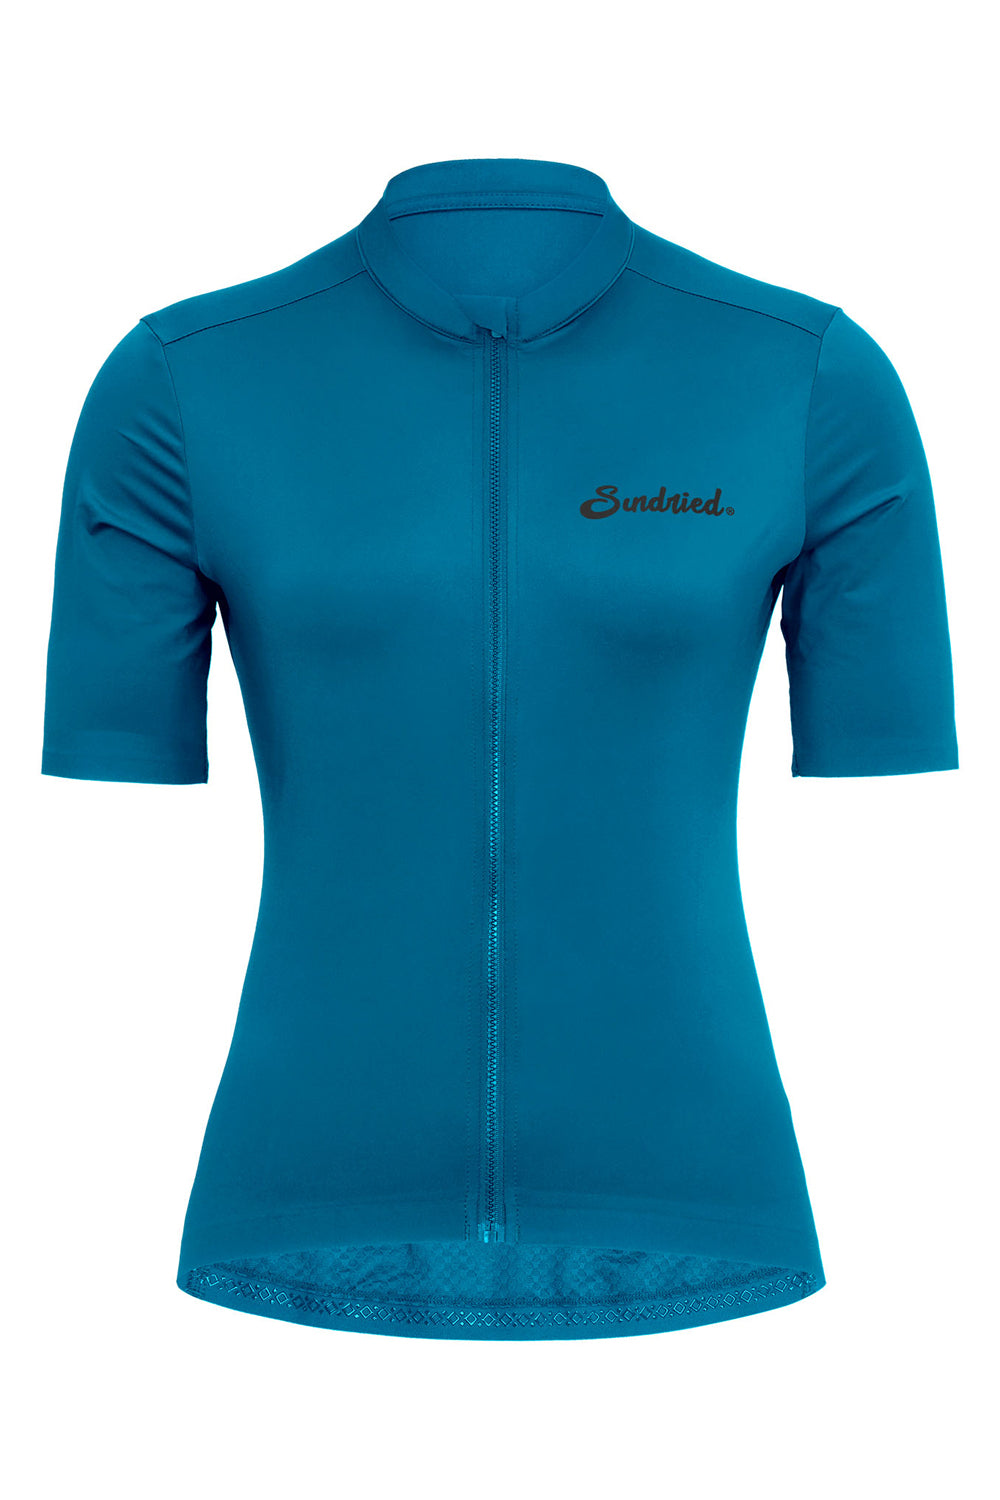 Sundried Sport Pianura Women's Blue Short Sleeve Cycle Jersey Short Sleeve Jersey XS SS1002 XS Blue Activewear